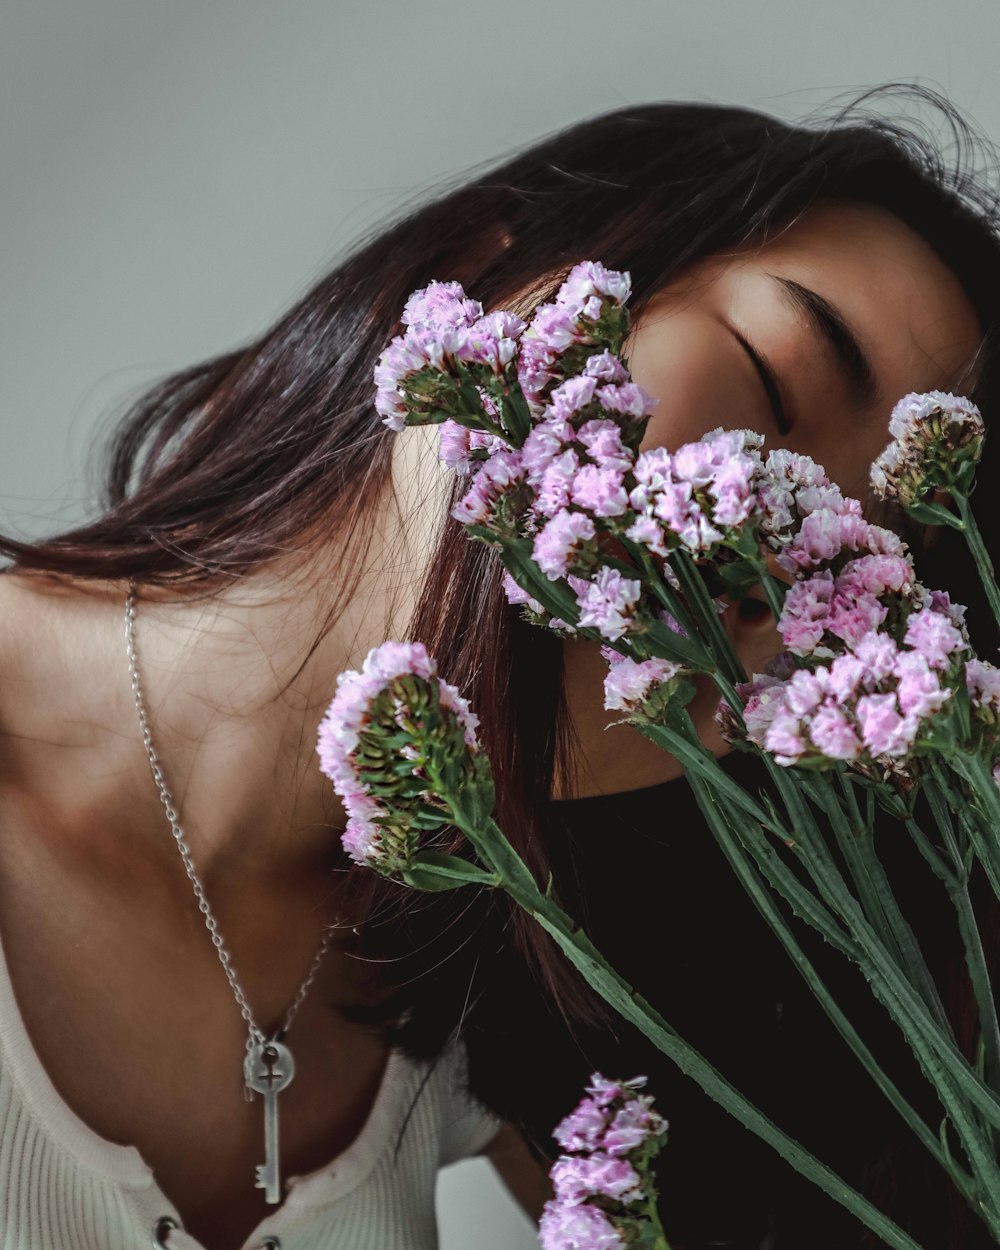 woman smelling purple petaled flower